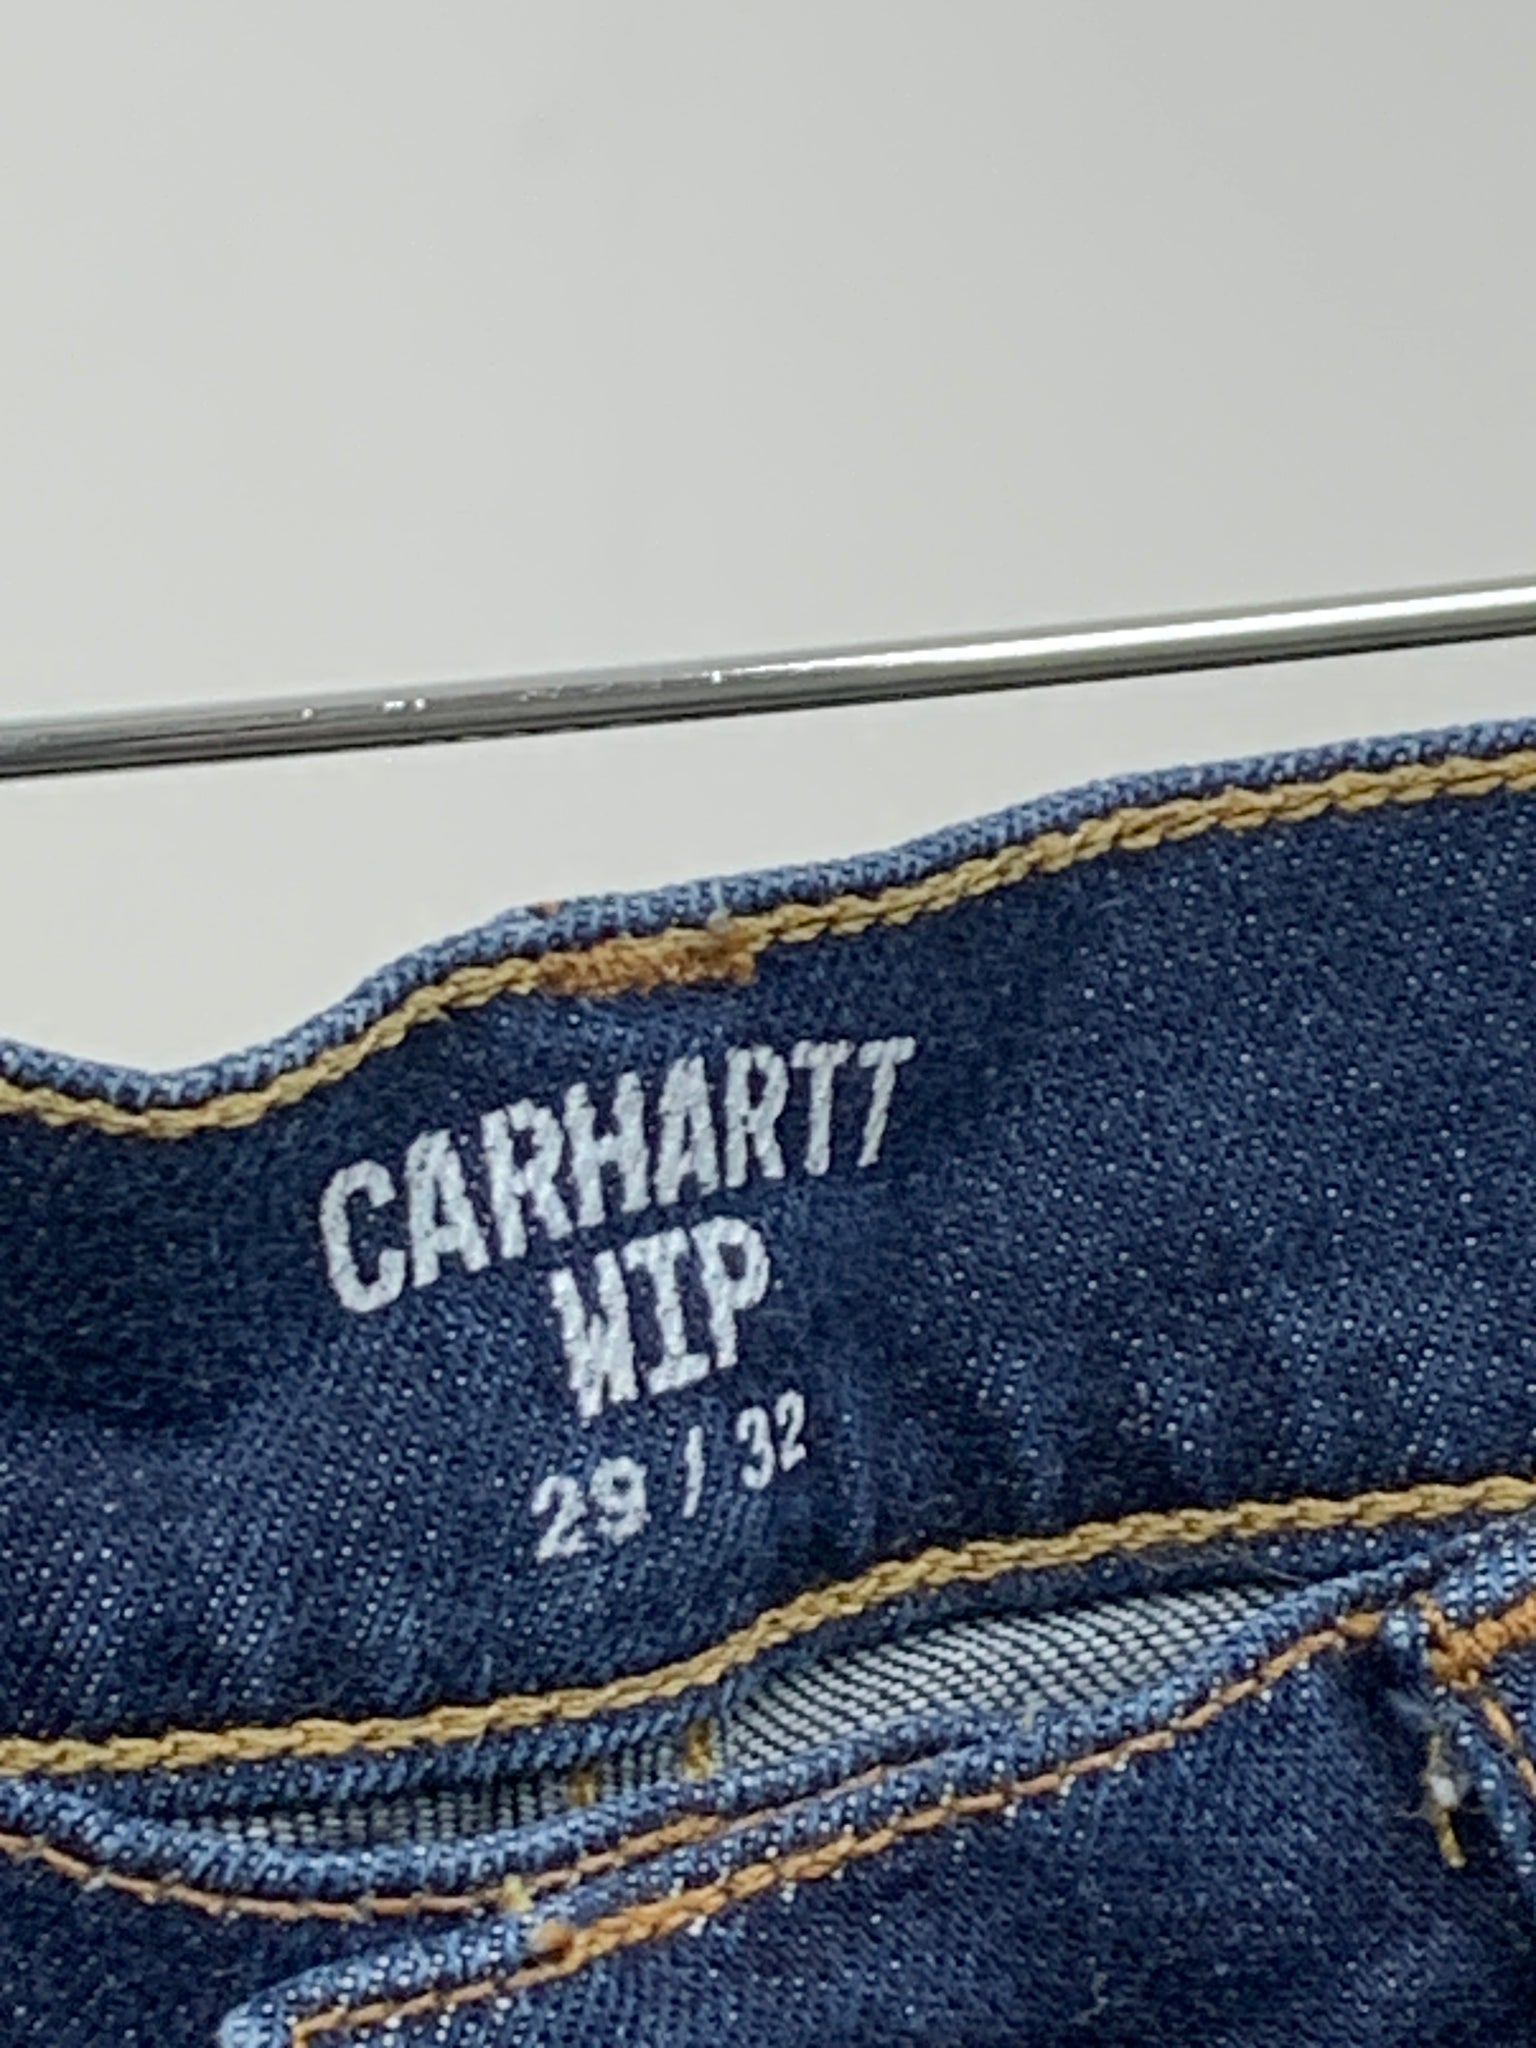 performer Frastøde Vores firma Carhartt wip blue jeans